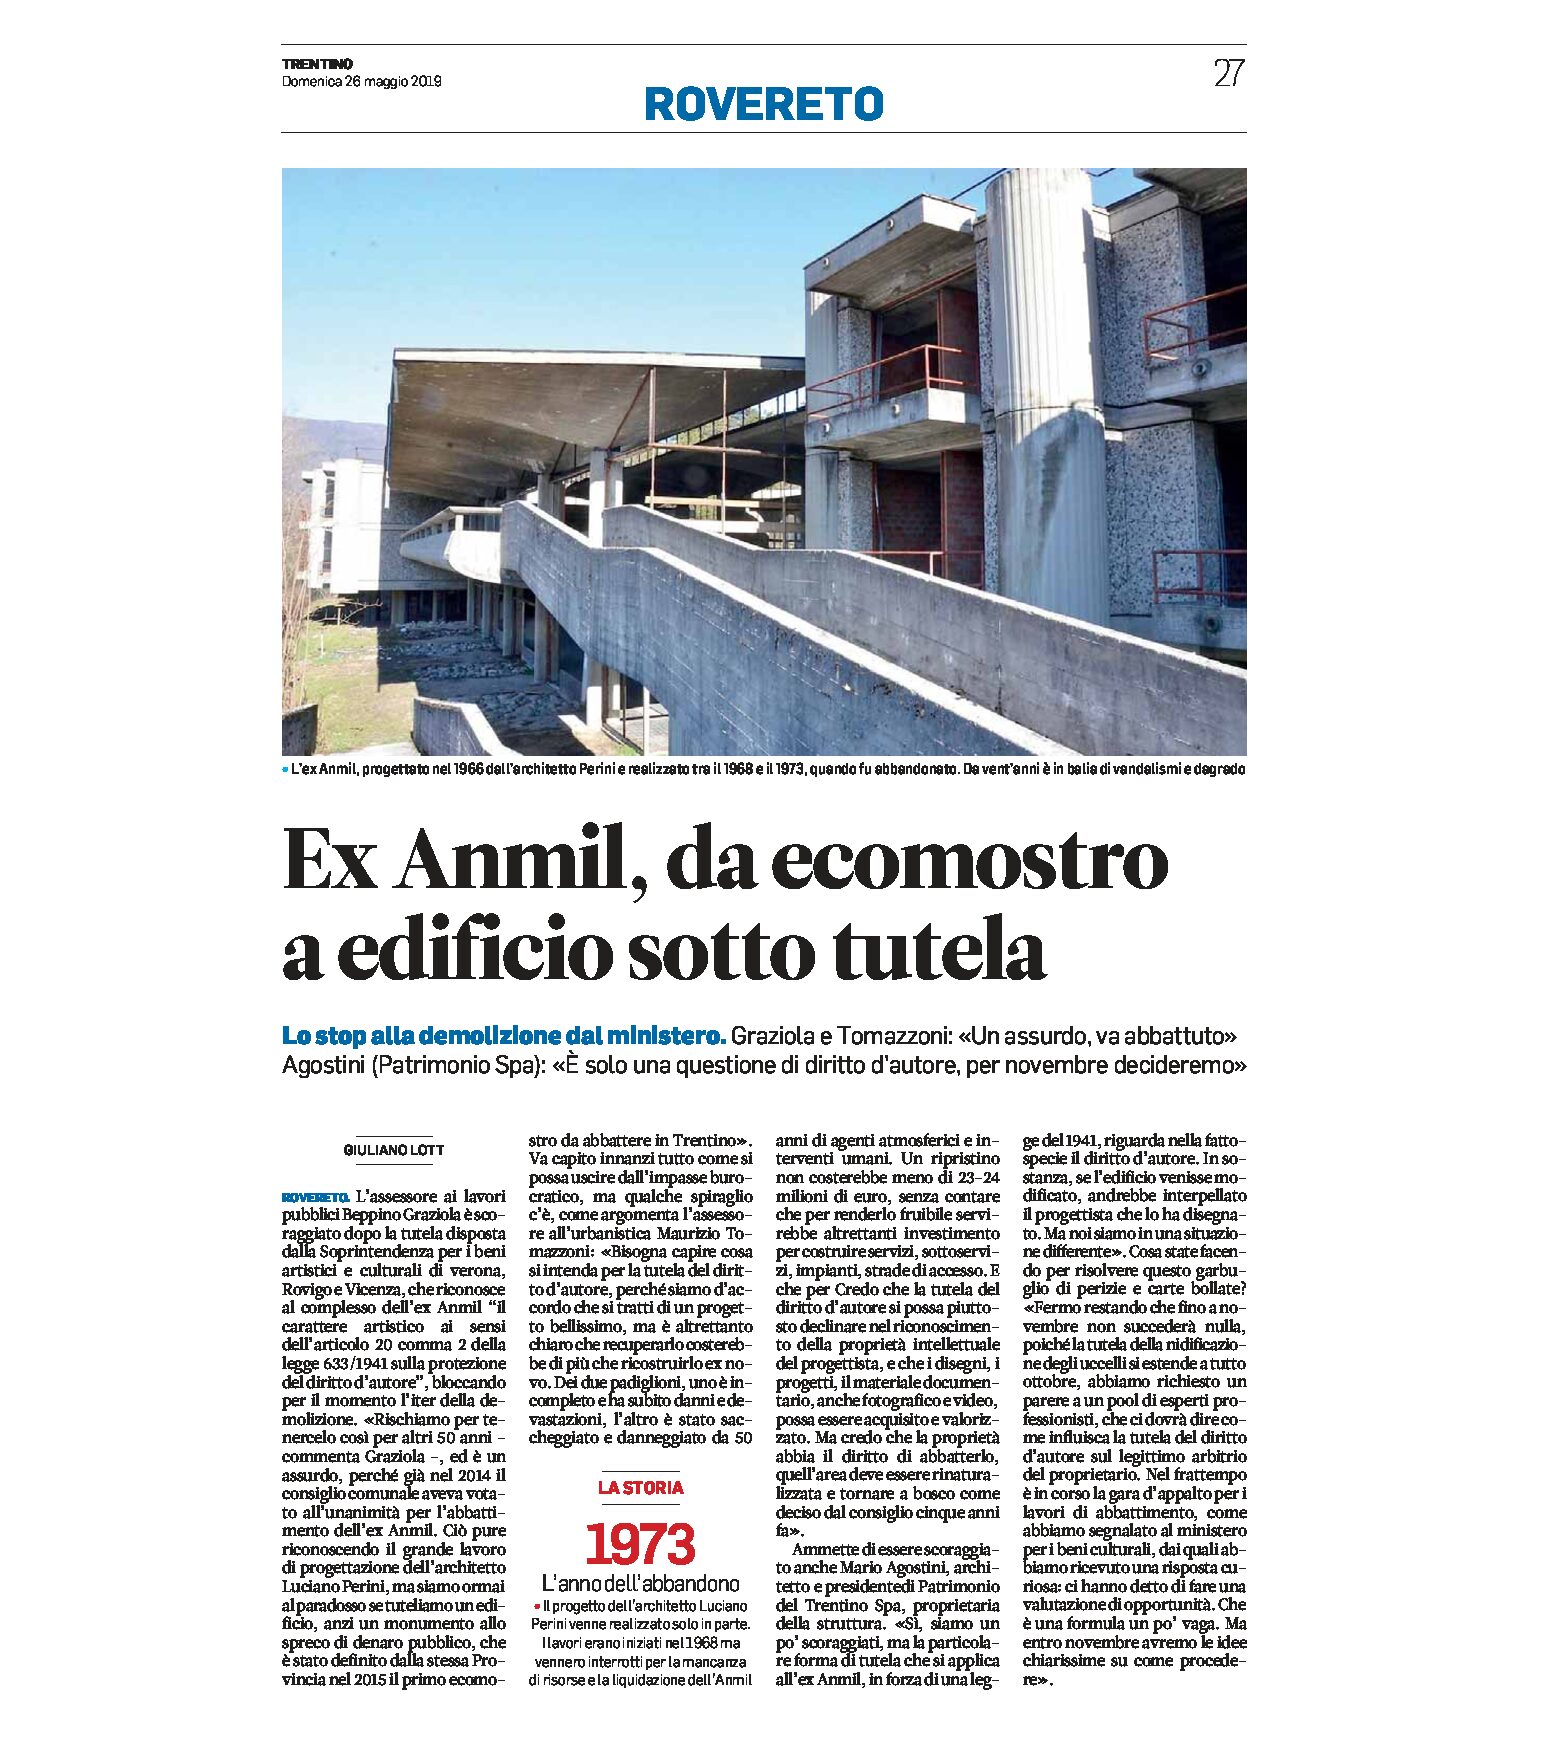 Rovereto, ex Anmil: da ecomostro a edificio sotto tutela.